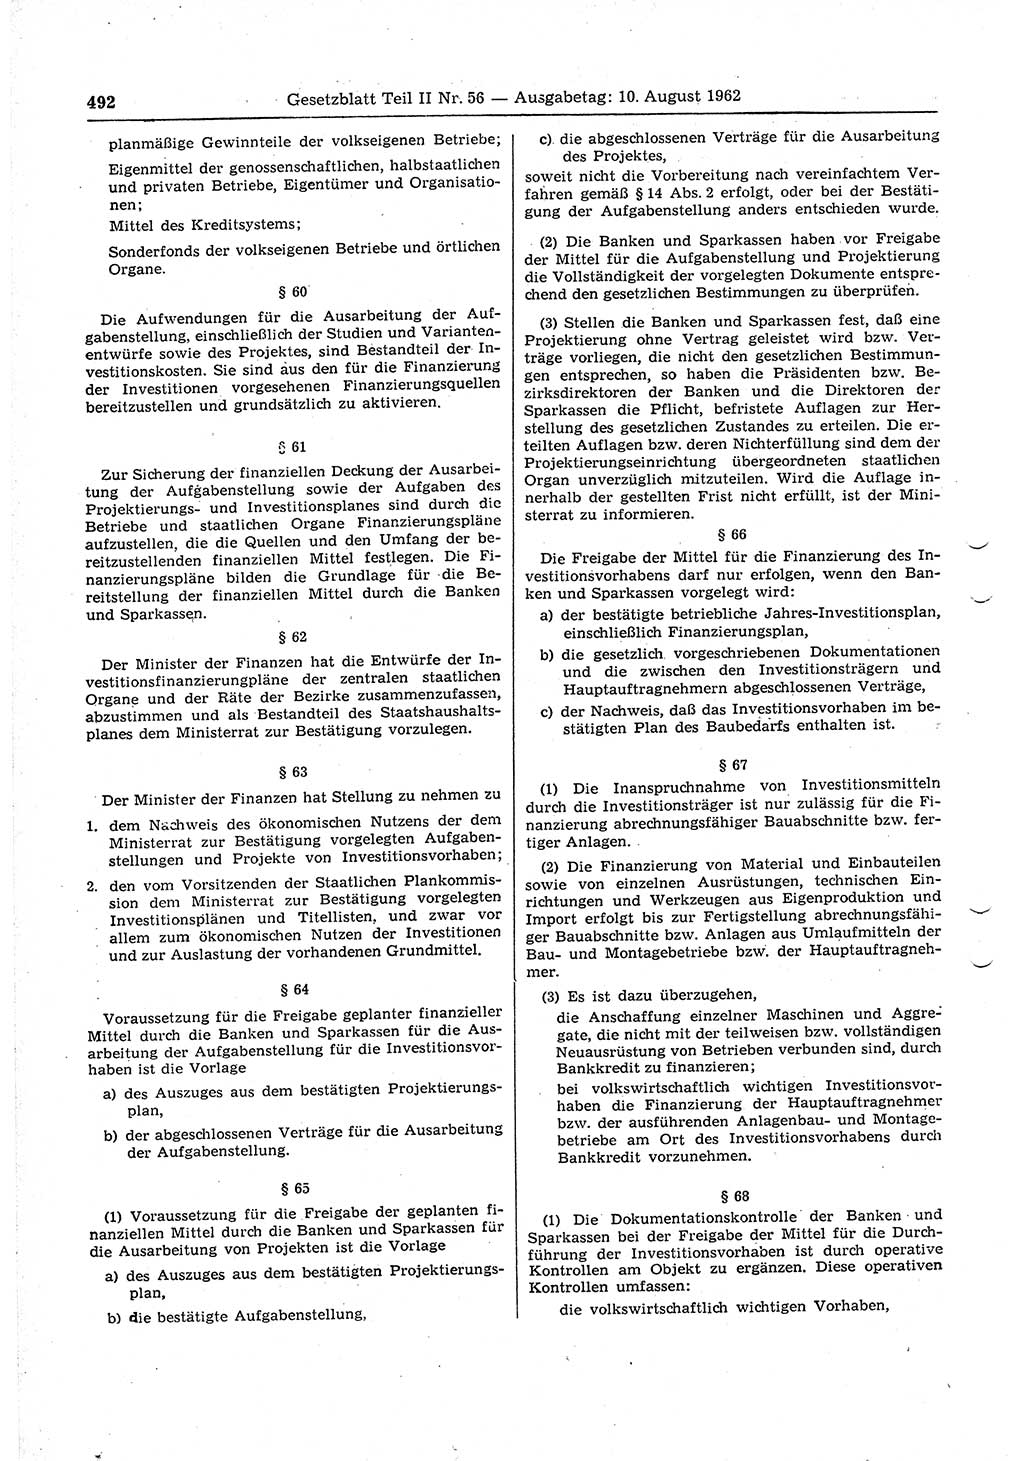 Gesetzblatt (GBl.) der Deutschen Demokratischen Republik (DDR) Teil ⅠⅠ 1962, Seite 492 (GBl. DDR ⅠⅠ 1962, S. 492)